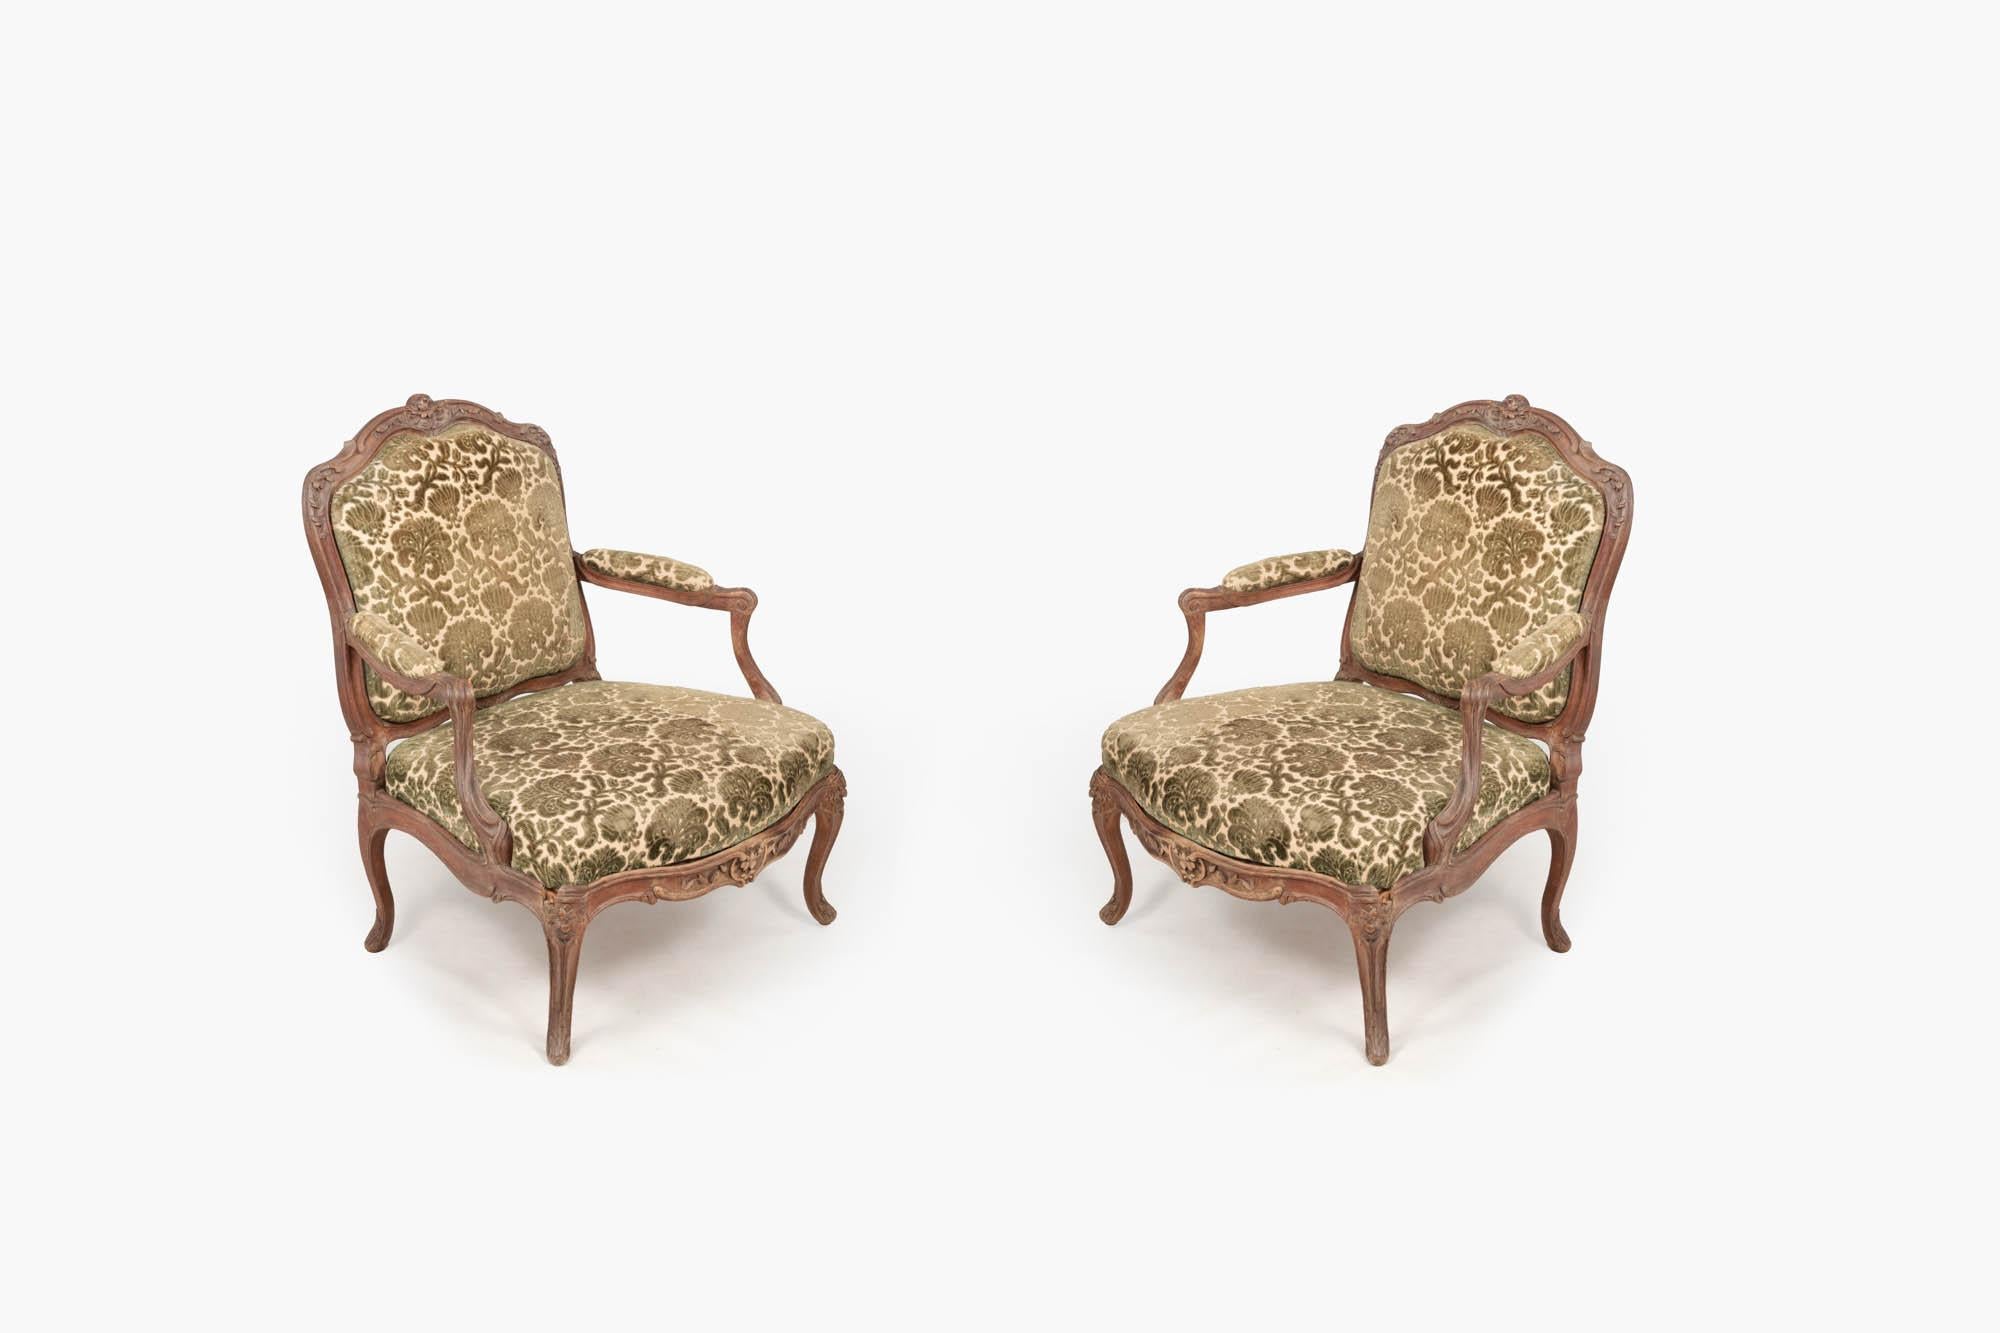 Paire de fauteuils français du 18ème siècle de style Louis XV avec une tapisserie en velours coupé de couleur fauve et verte. Le dossier, les accoudoirs et les sièges à dossier serpentin rembourrés en forme de cartouche, avec un motif floral